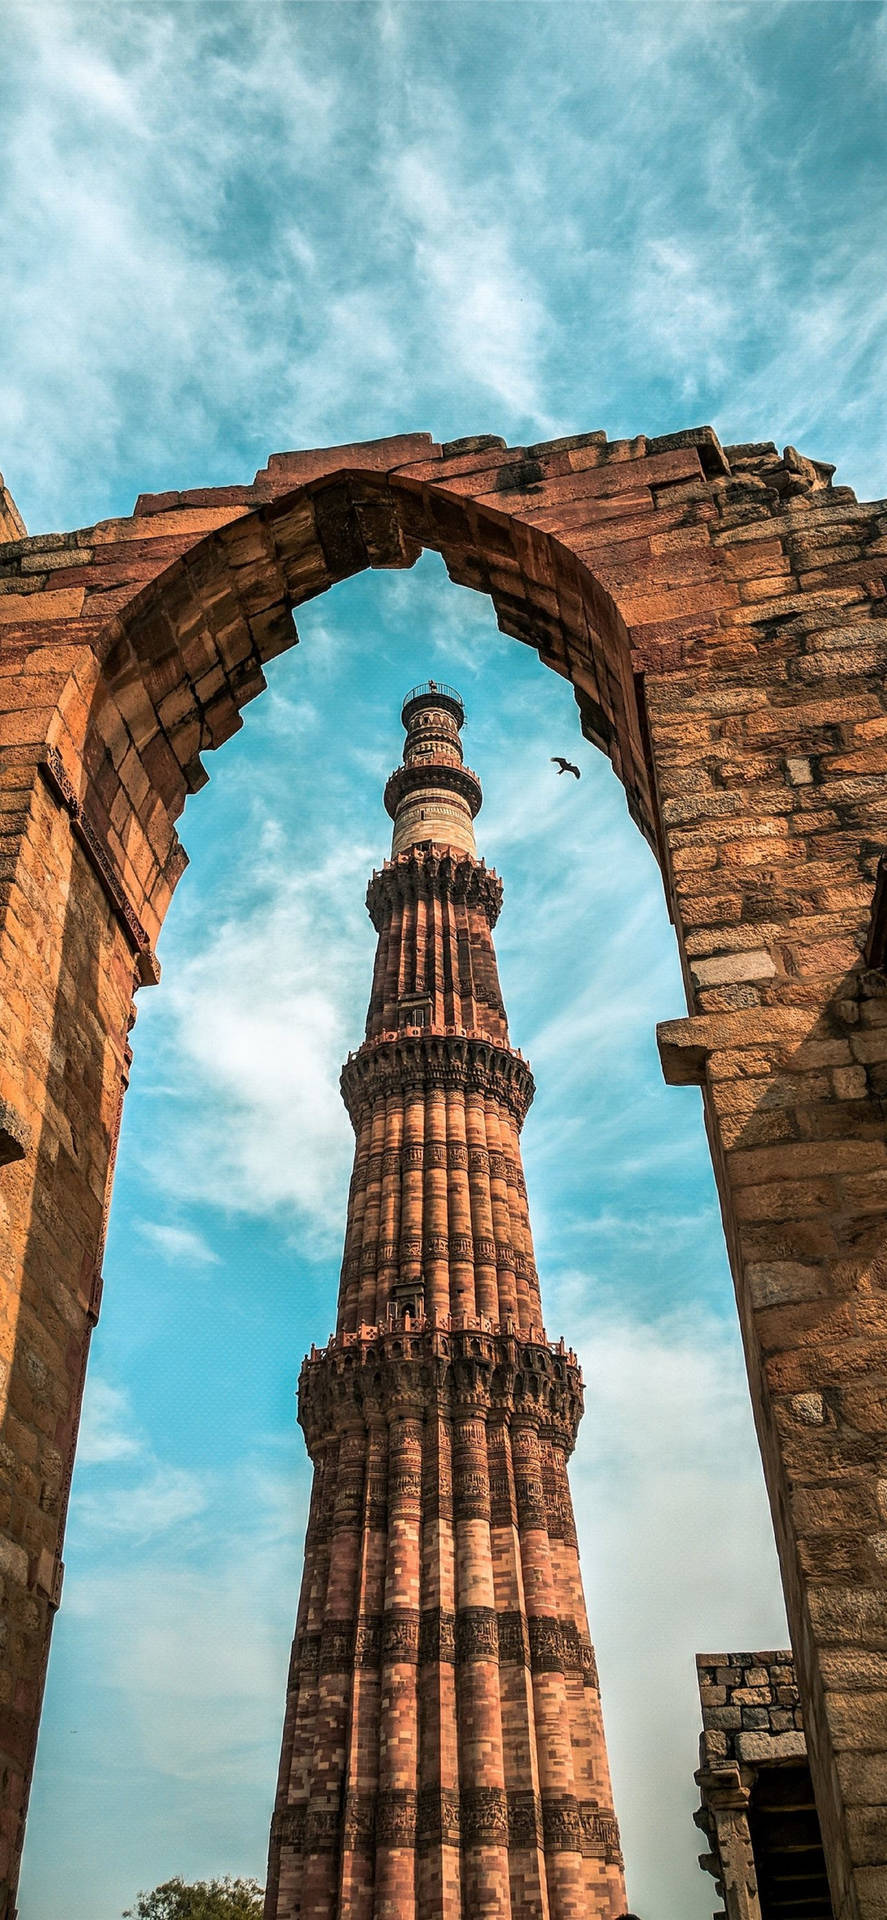 Delhi Qutub Minar Arch